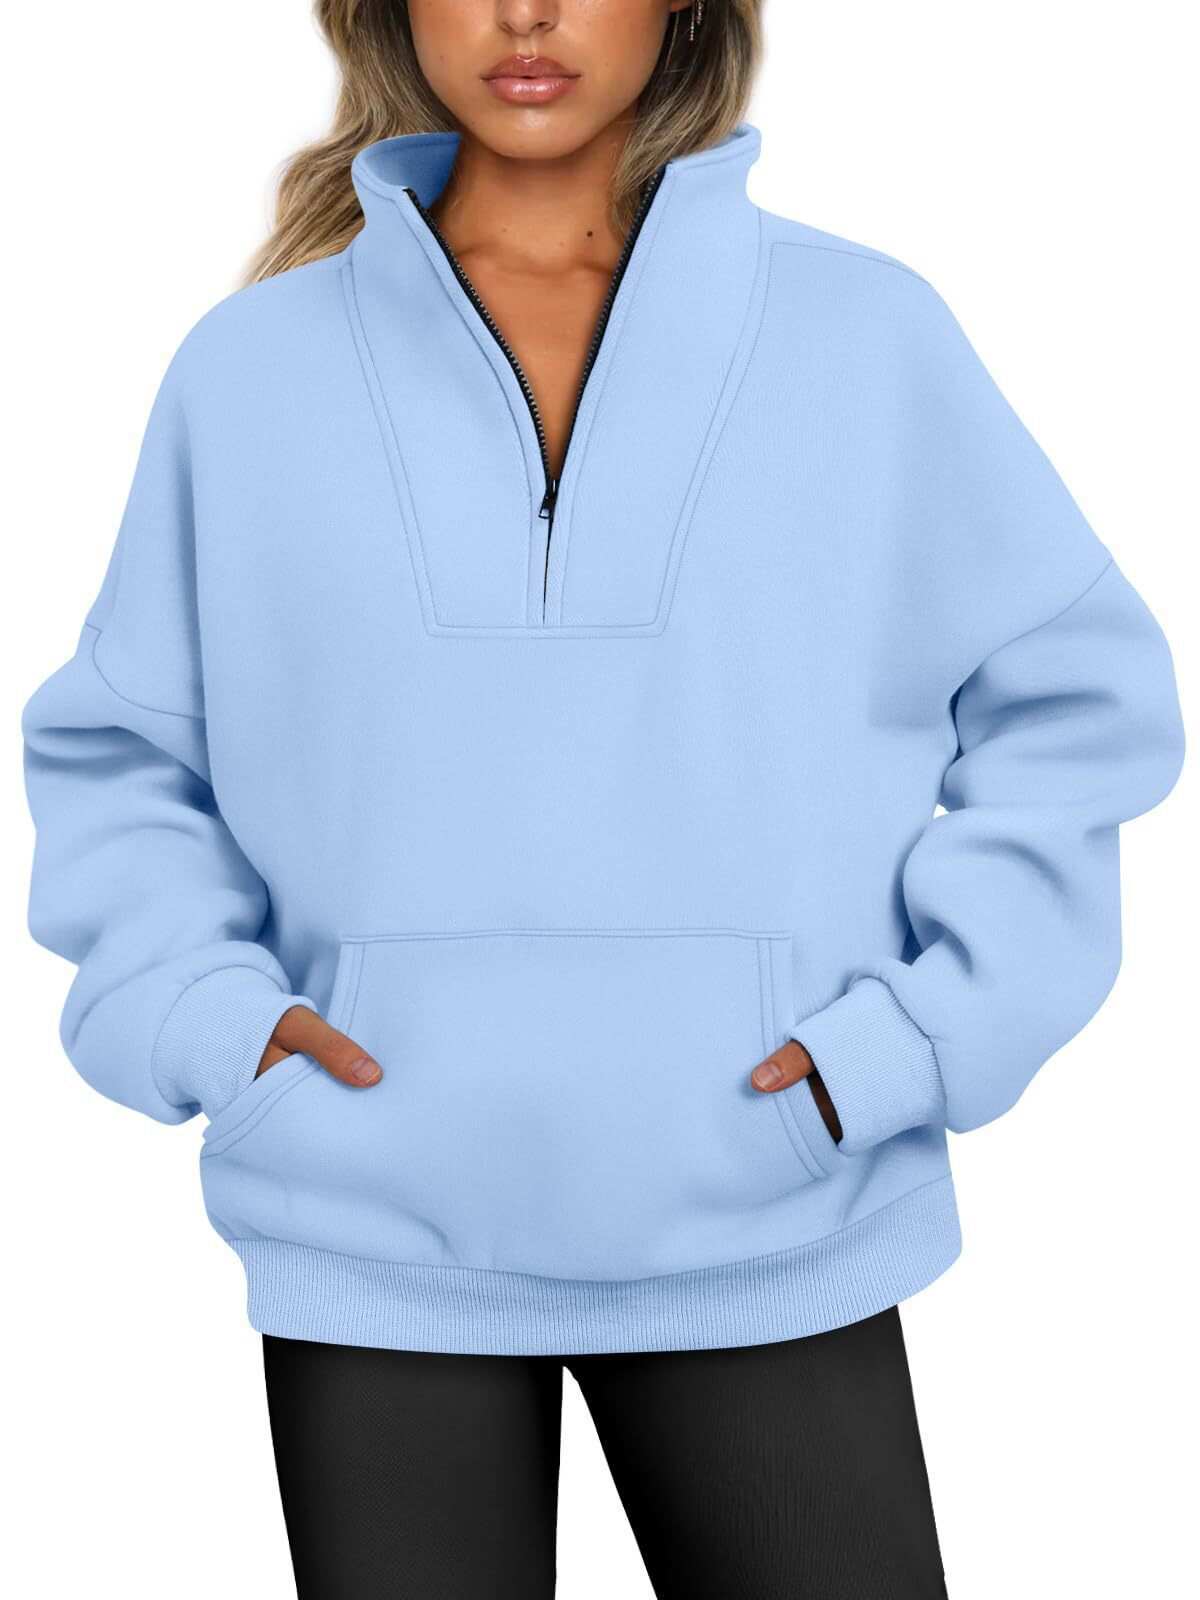 New arrival 50% Off- Half Zip Pullover Sweatshirts Quarter Zip Oversized Hoodies